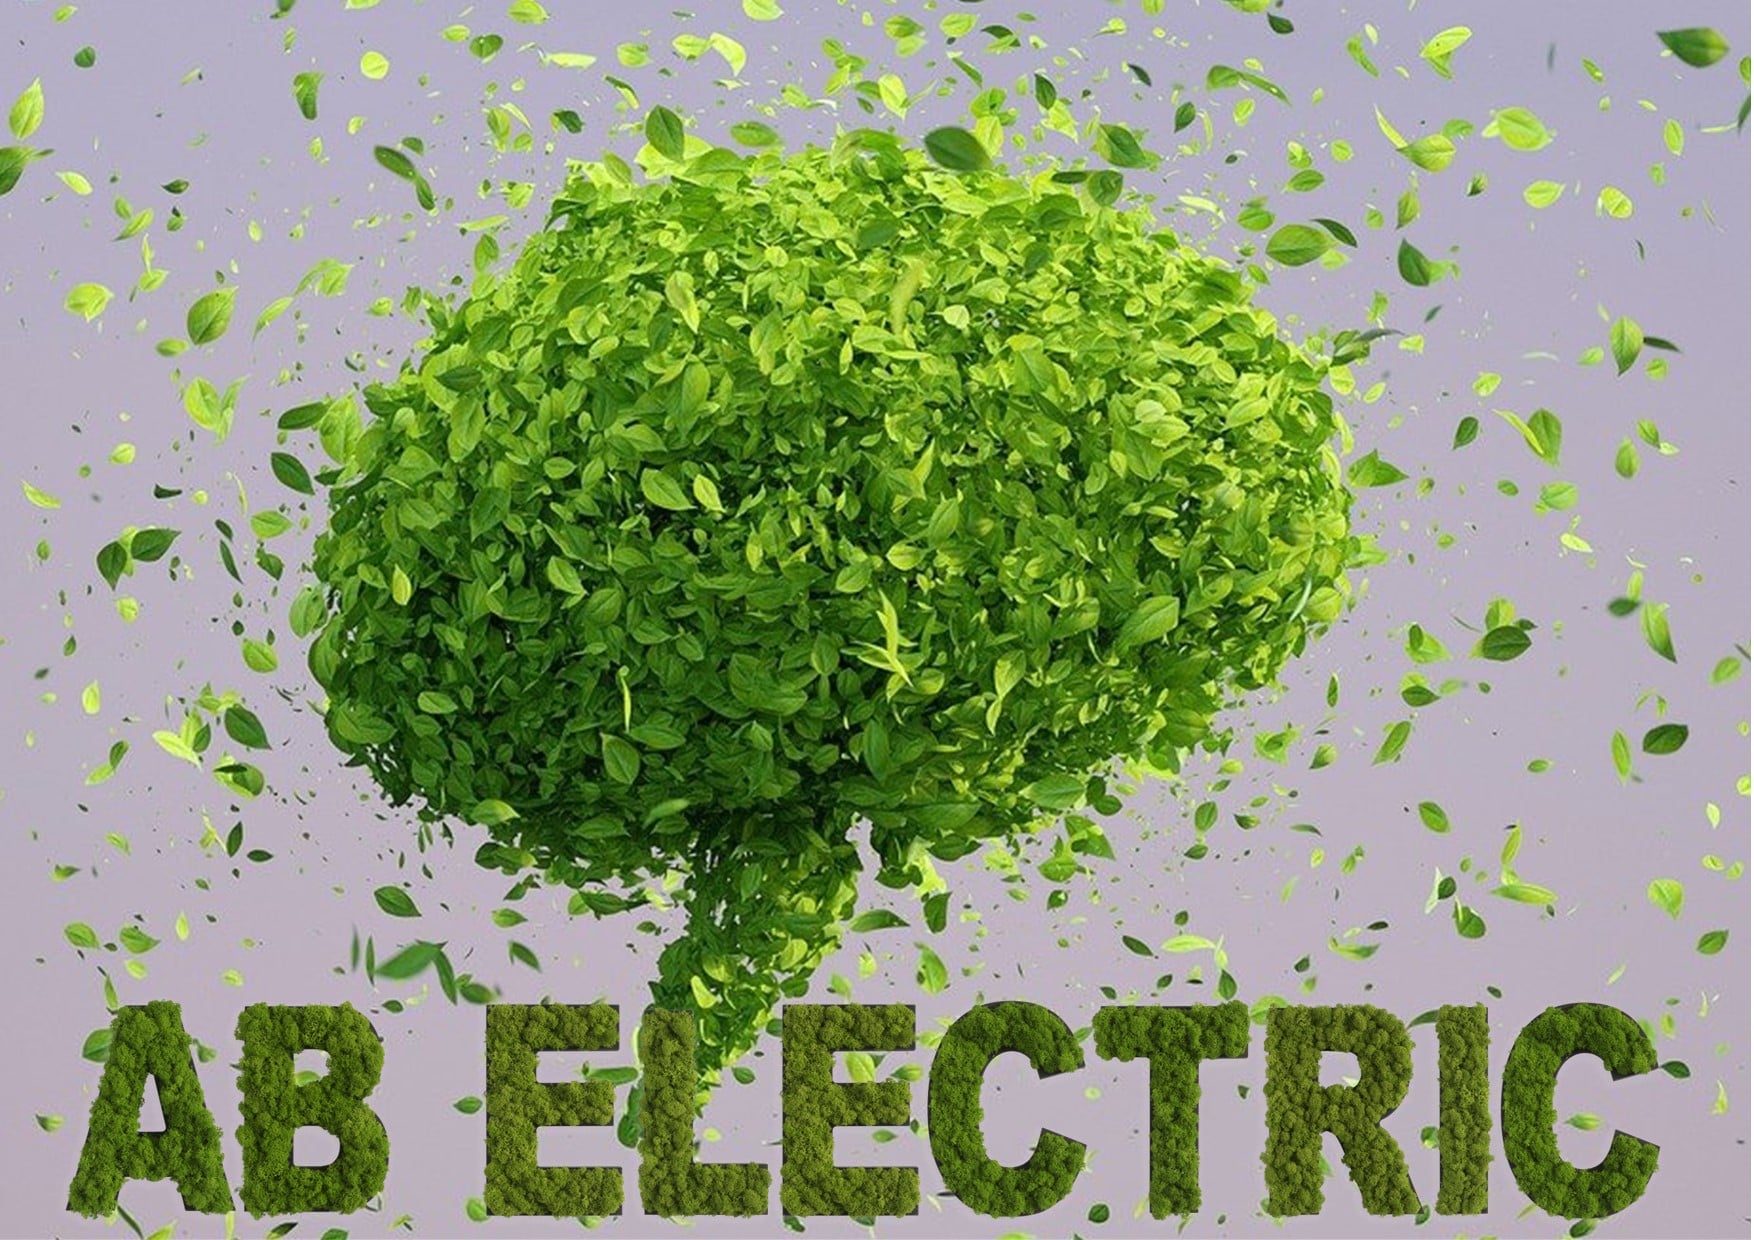 Det handler ikke kun om CO2 aftryk, når der hos AB Electric A/S tales om bæredygtighed, verdensmål og samfundsansvar.